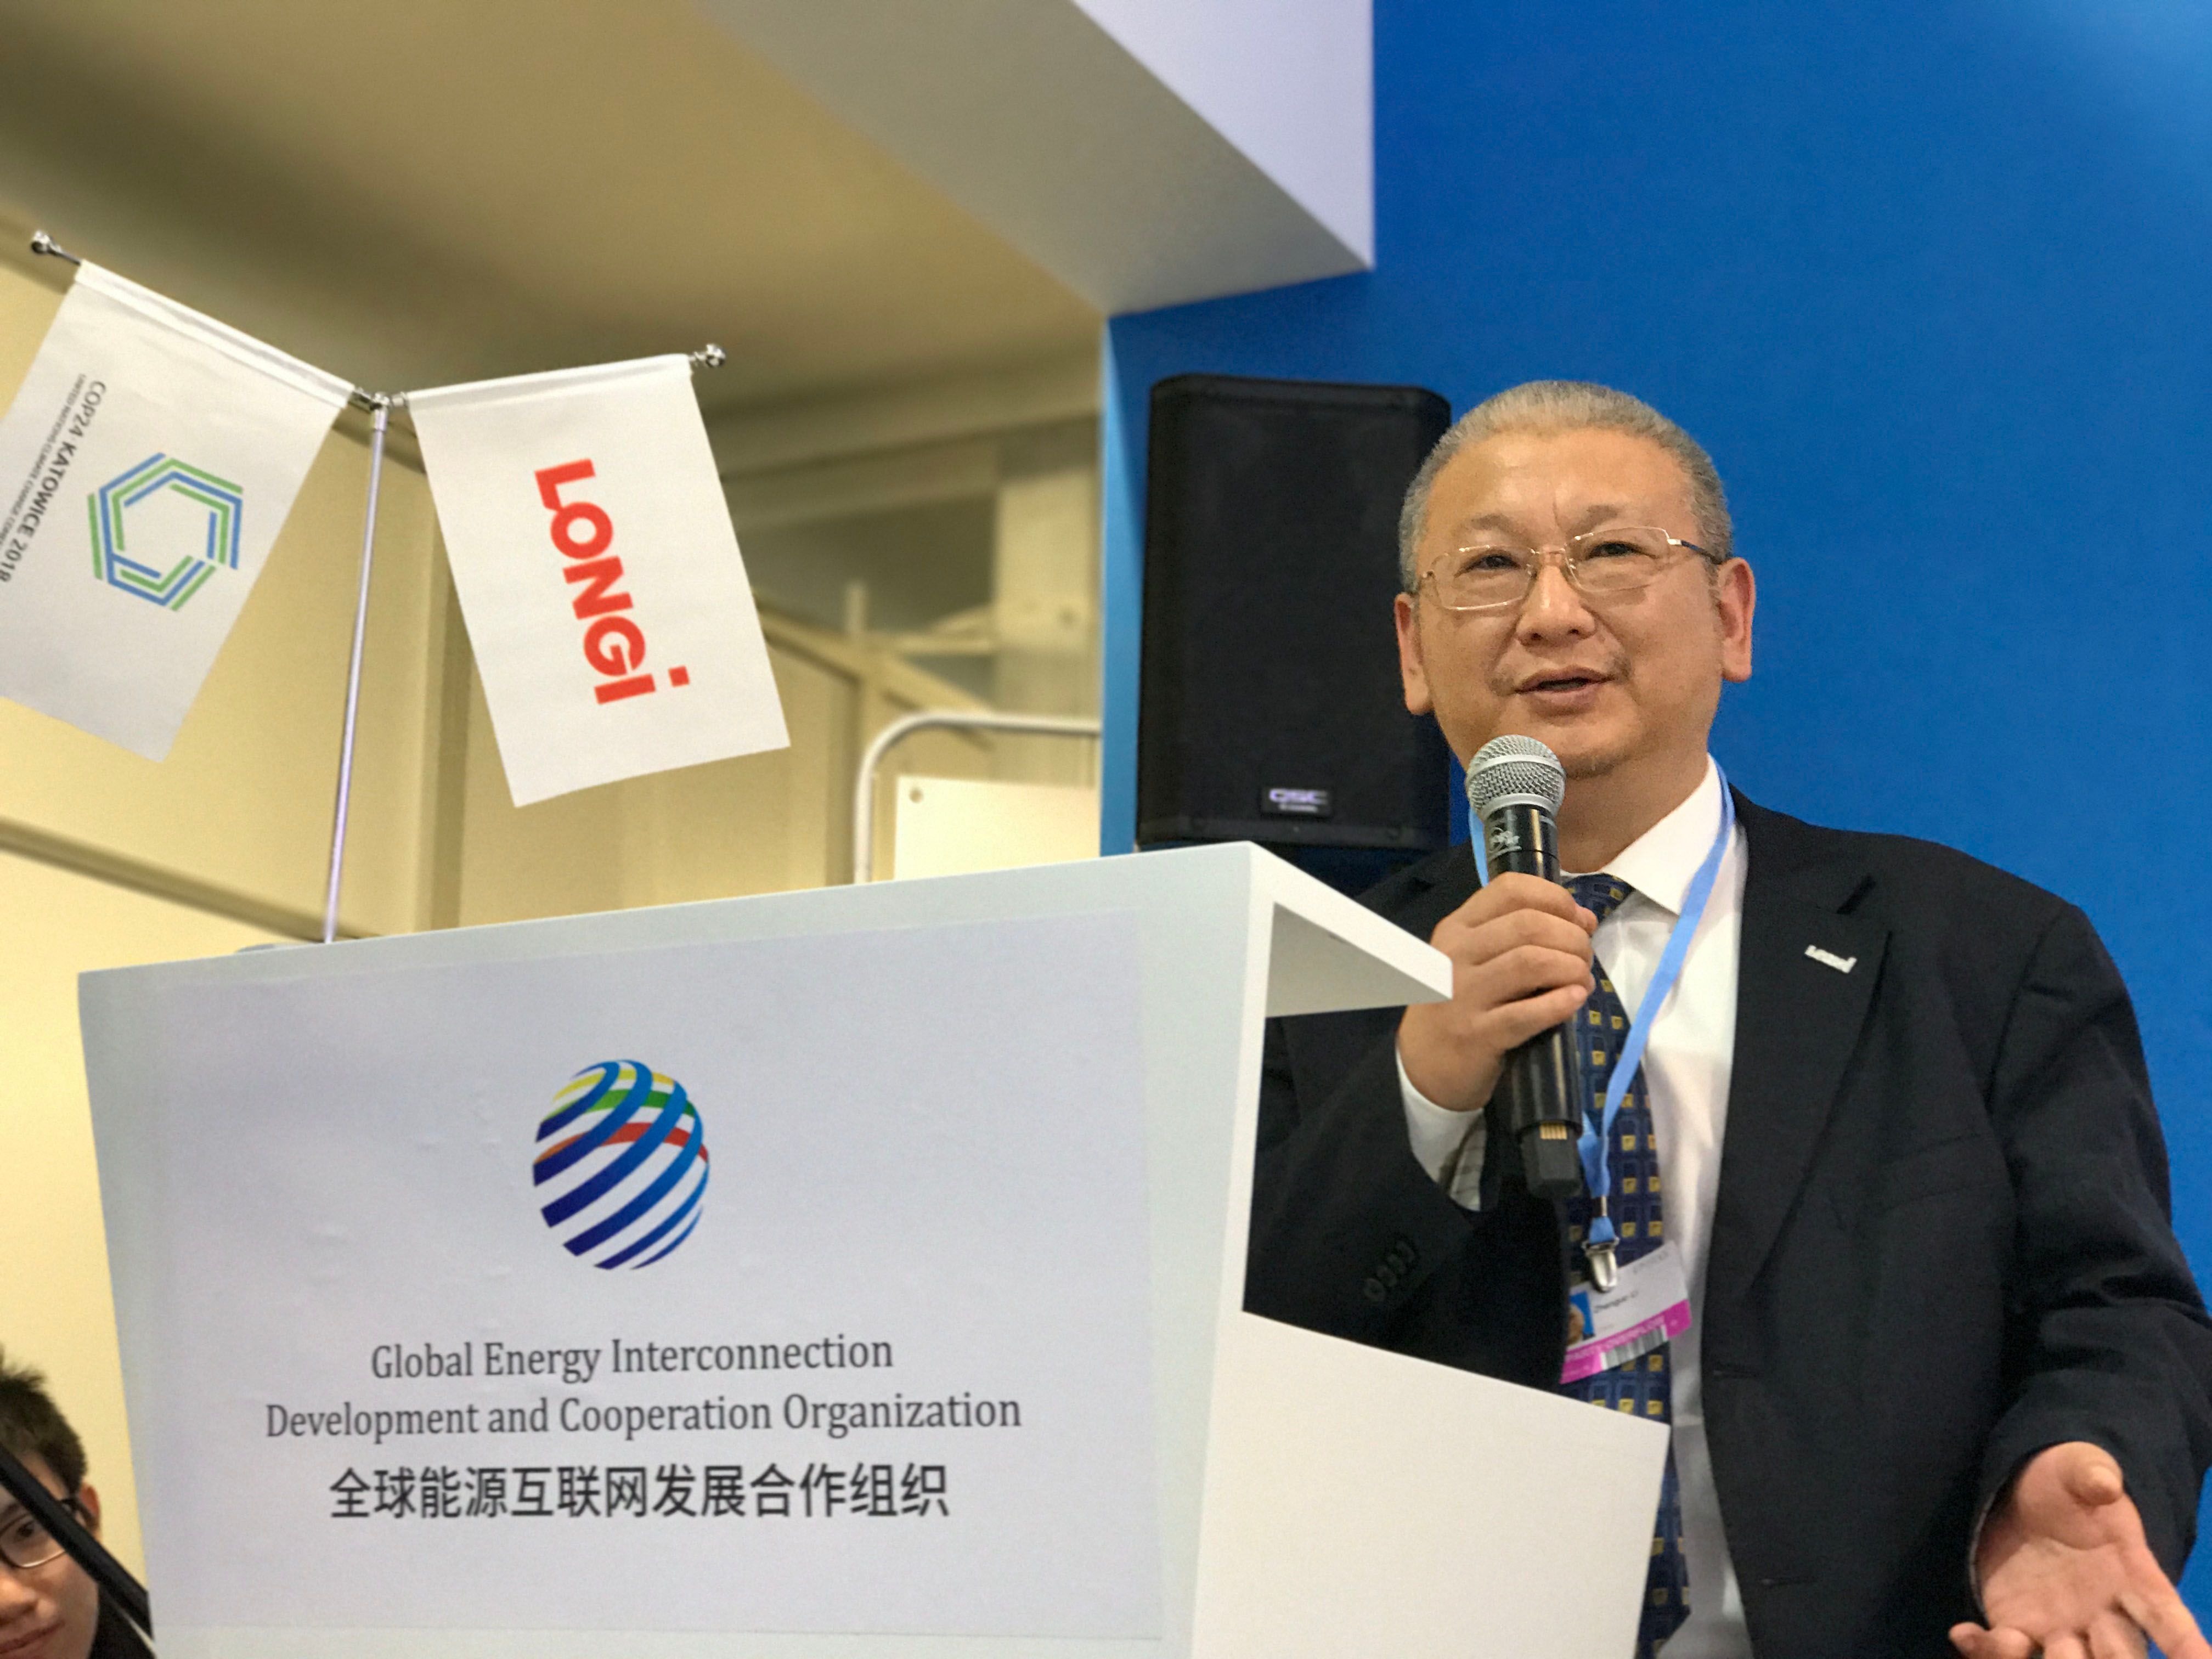 Li Zhenguo, fundador y presidente de LONGi, asistió a la 24ª Conferencia de las Naciones Unidas sobre el Cambio Climático y pronunció un discurso temático